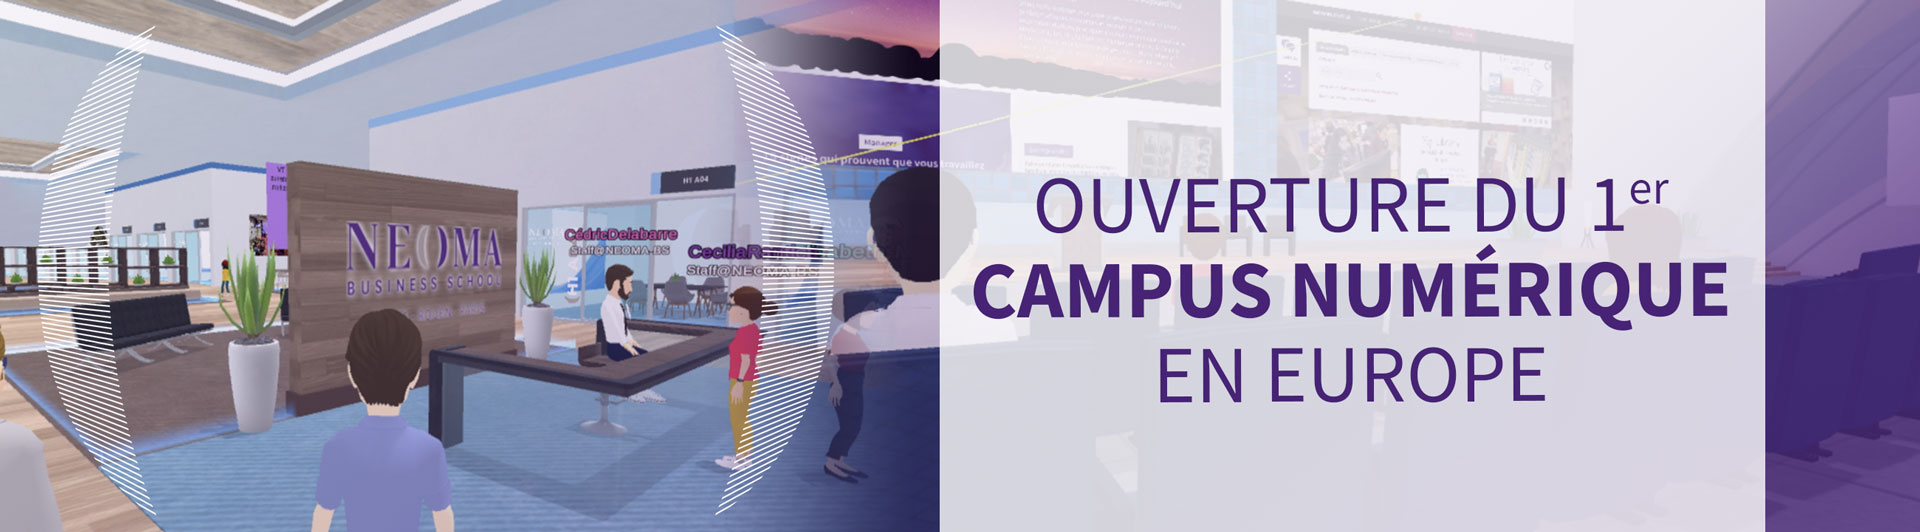 Ouverture du 1er campus numérique en Europe